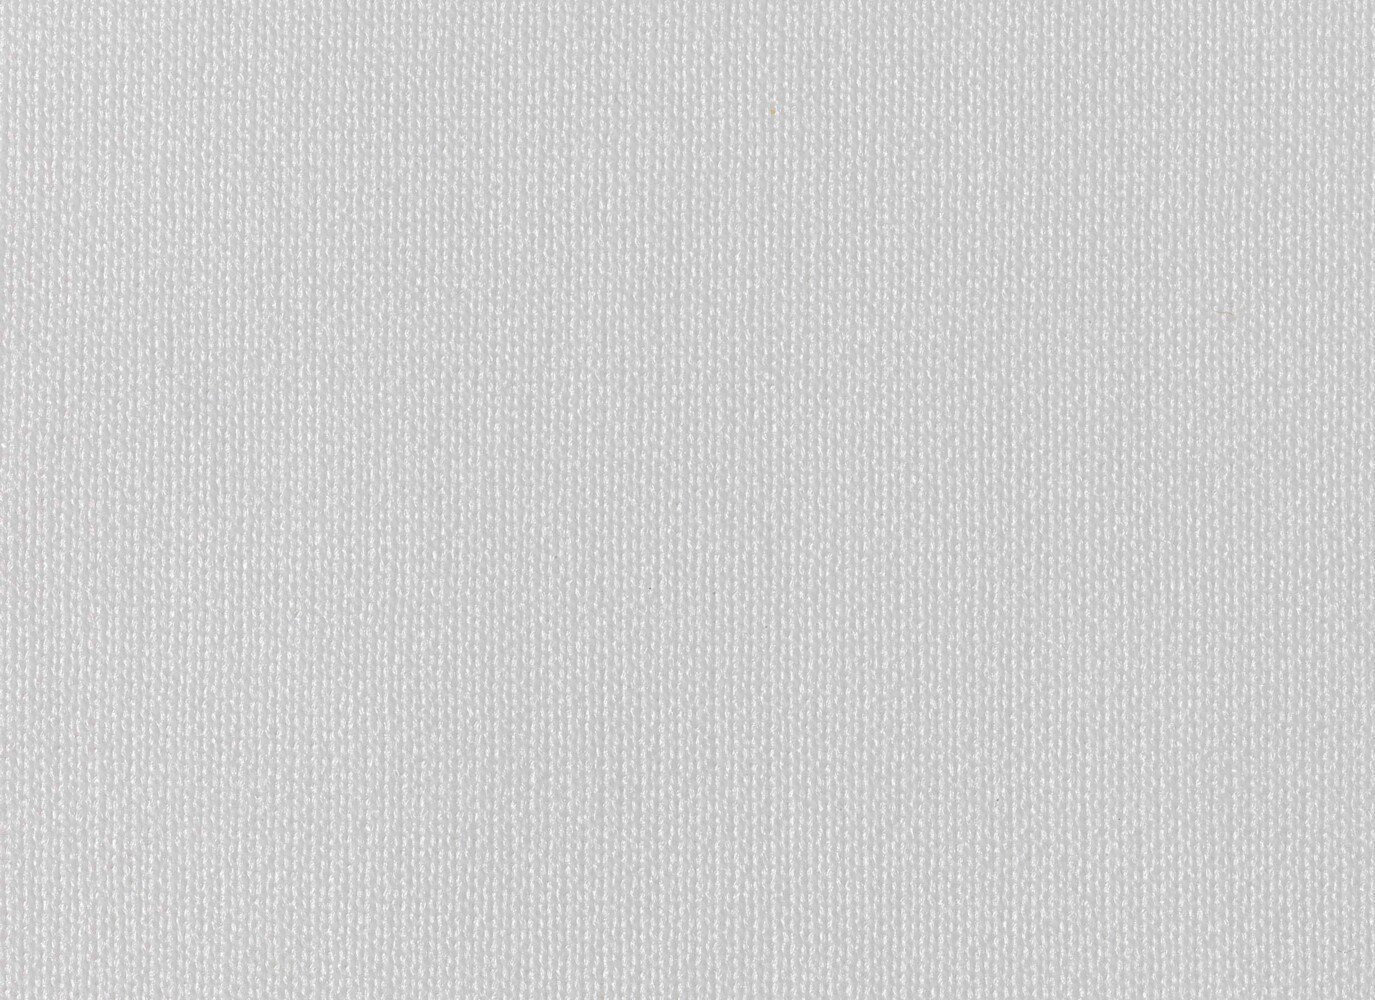 Kimtech® AUTO Polyester Sealant Wischtücher 38714 - 30 ungefaltete, weiße Tücher pro Box (Packung enthält 12 Boxen) - 38714